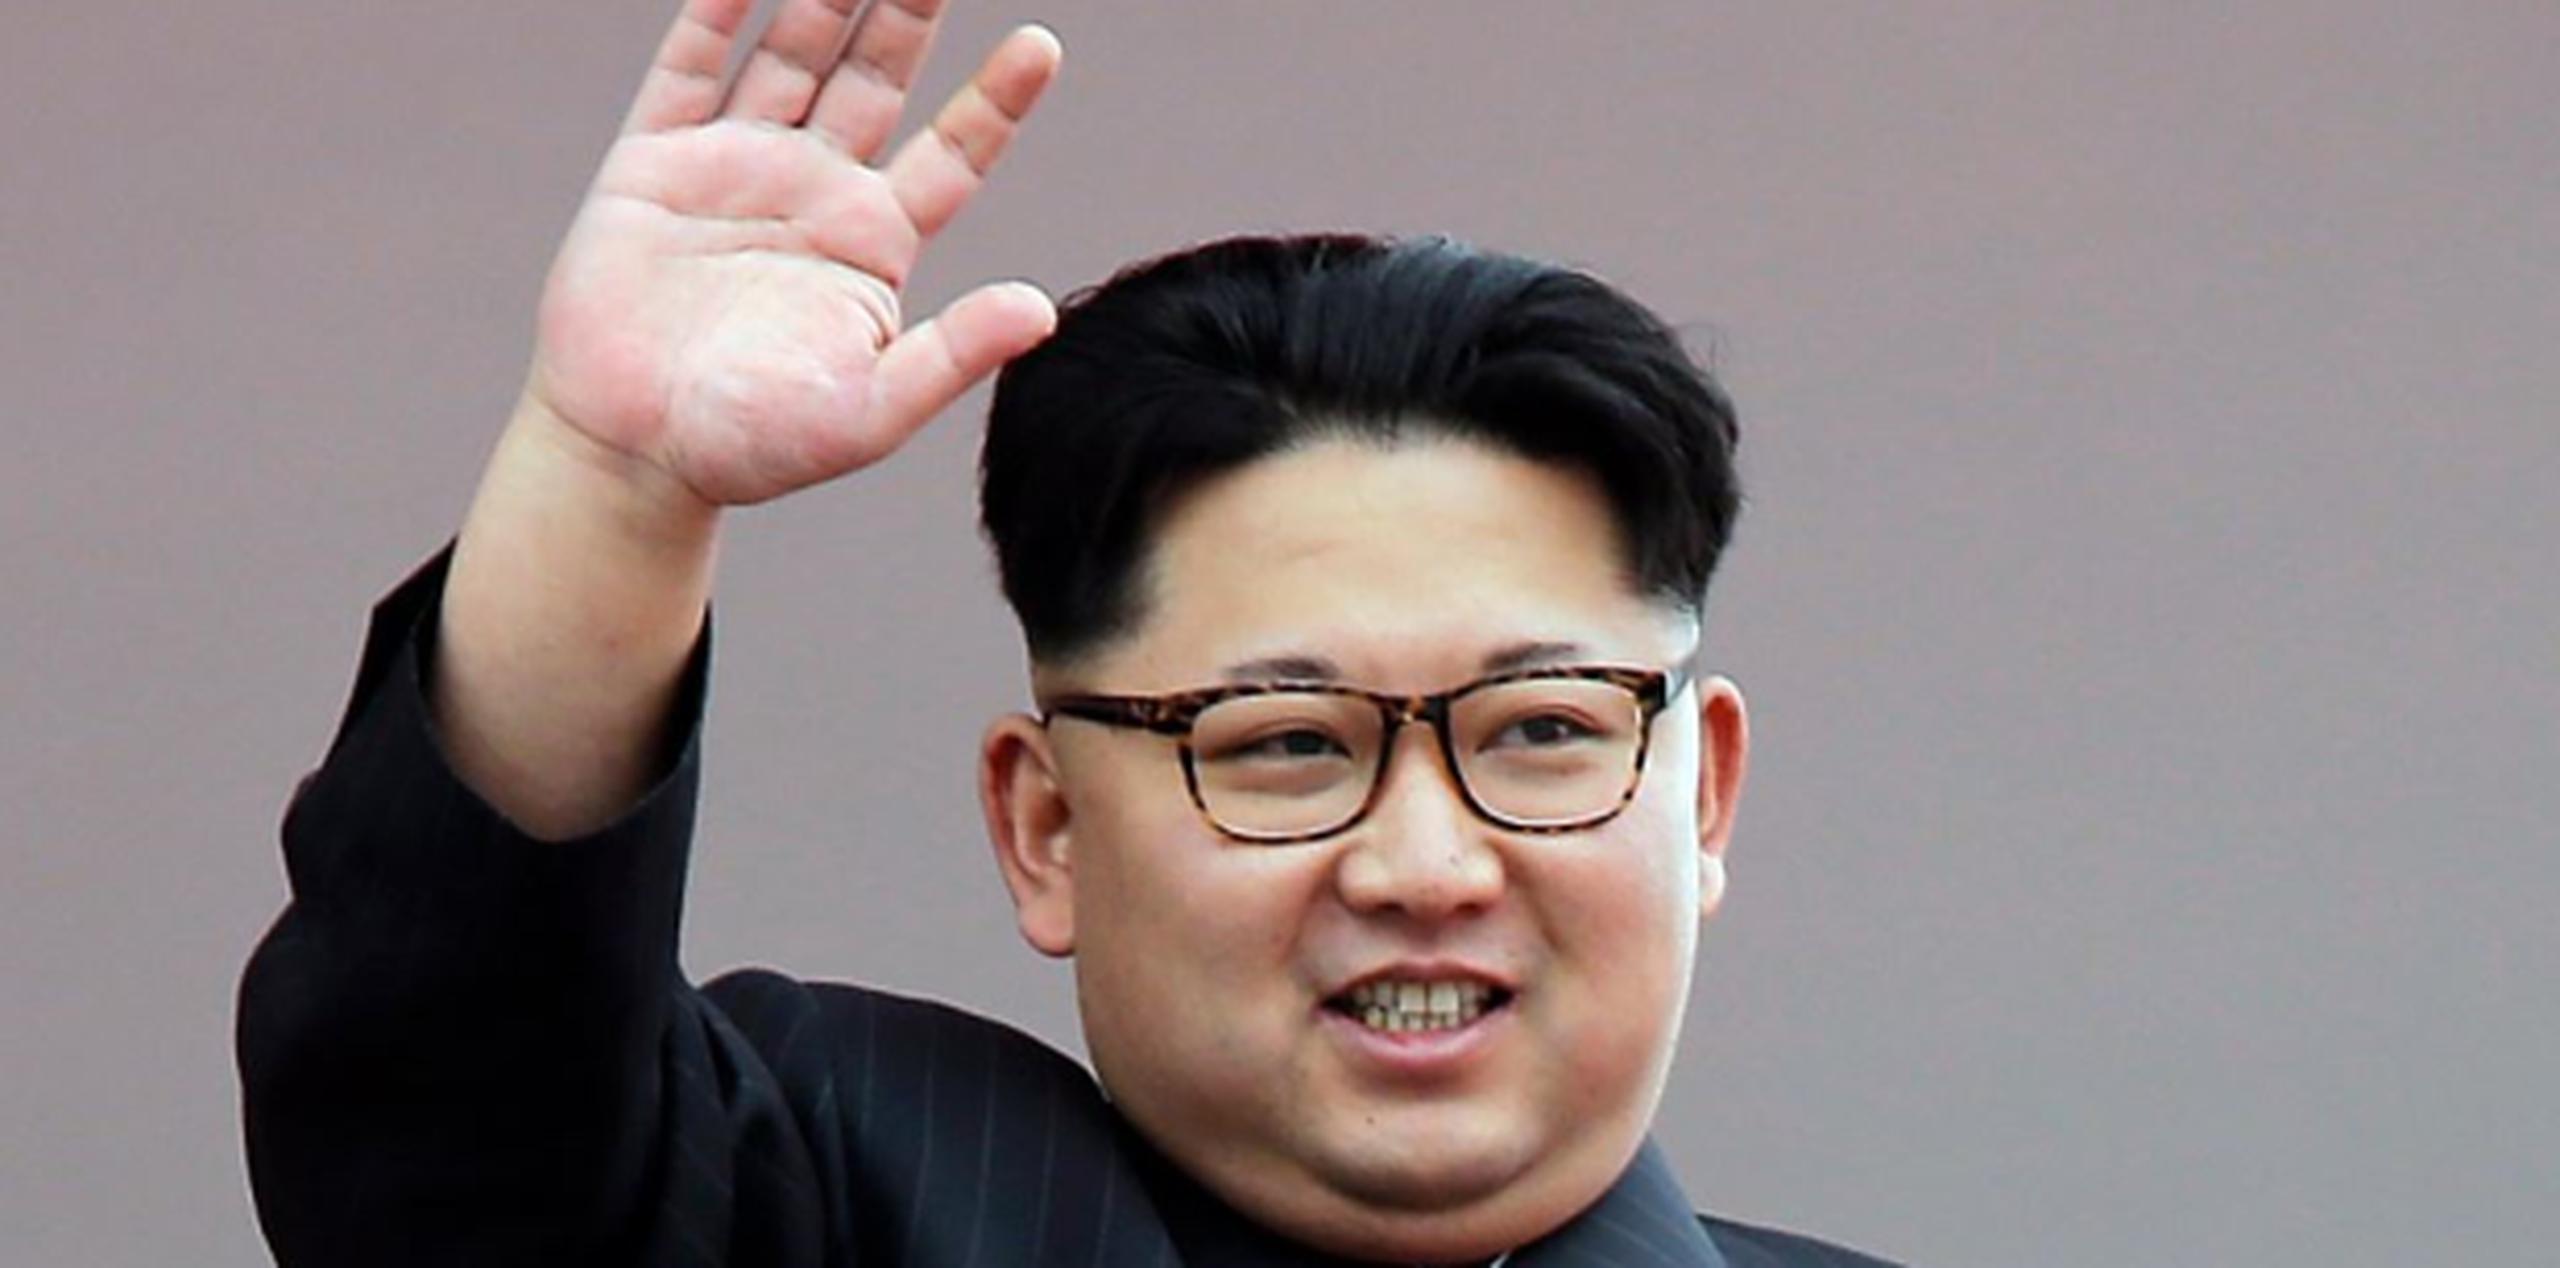 Asumió el poder tras la muerte de su padre, Kim Jong Il, a finales de 2011. (AP)